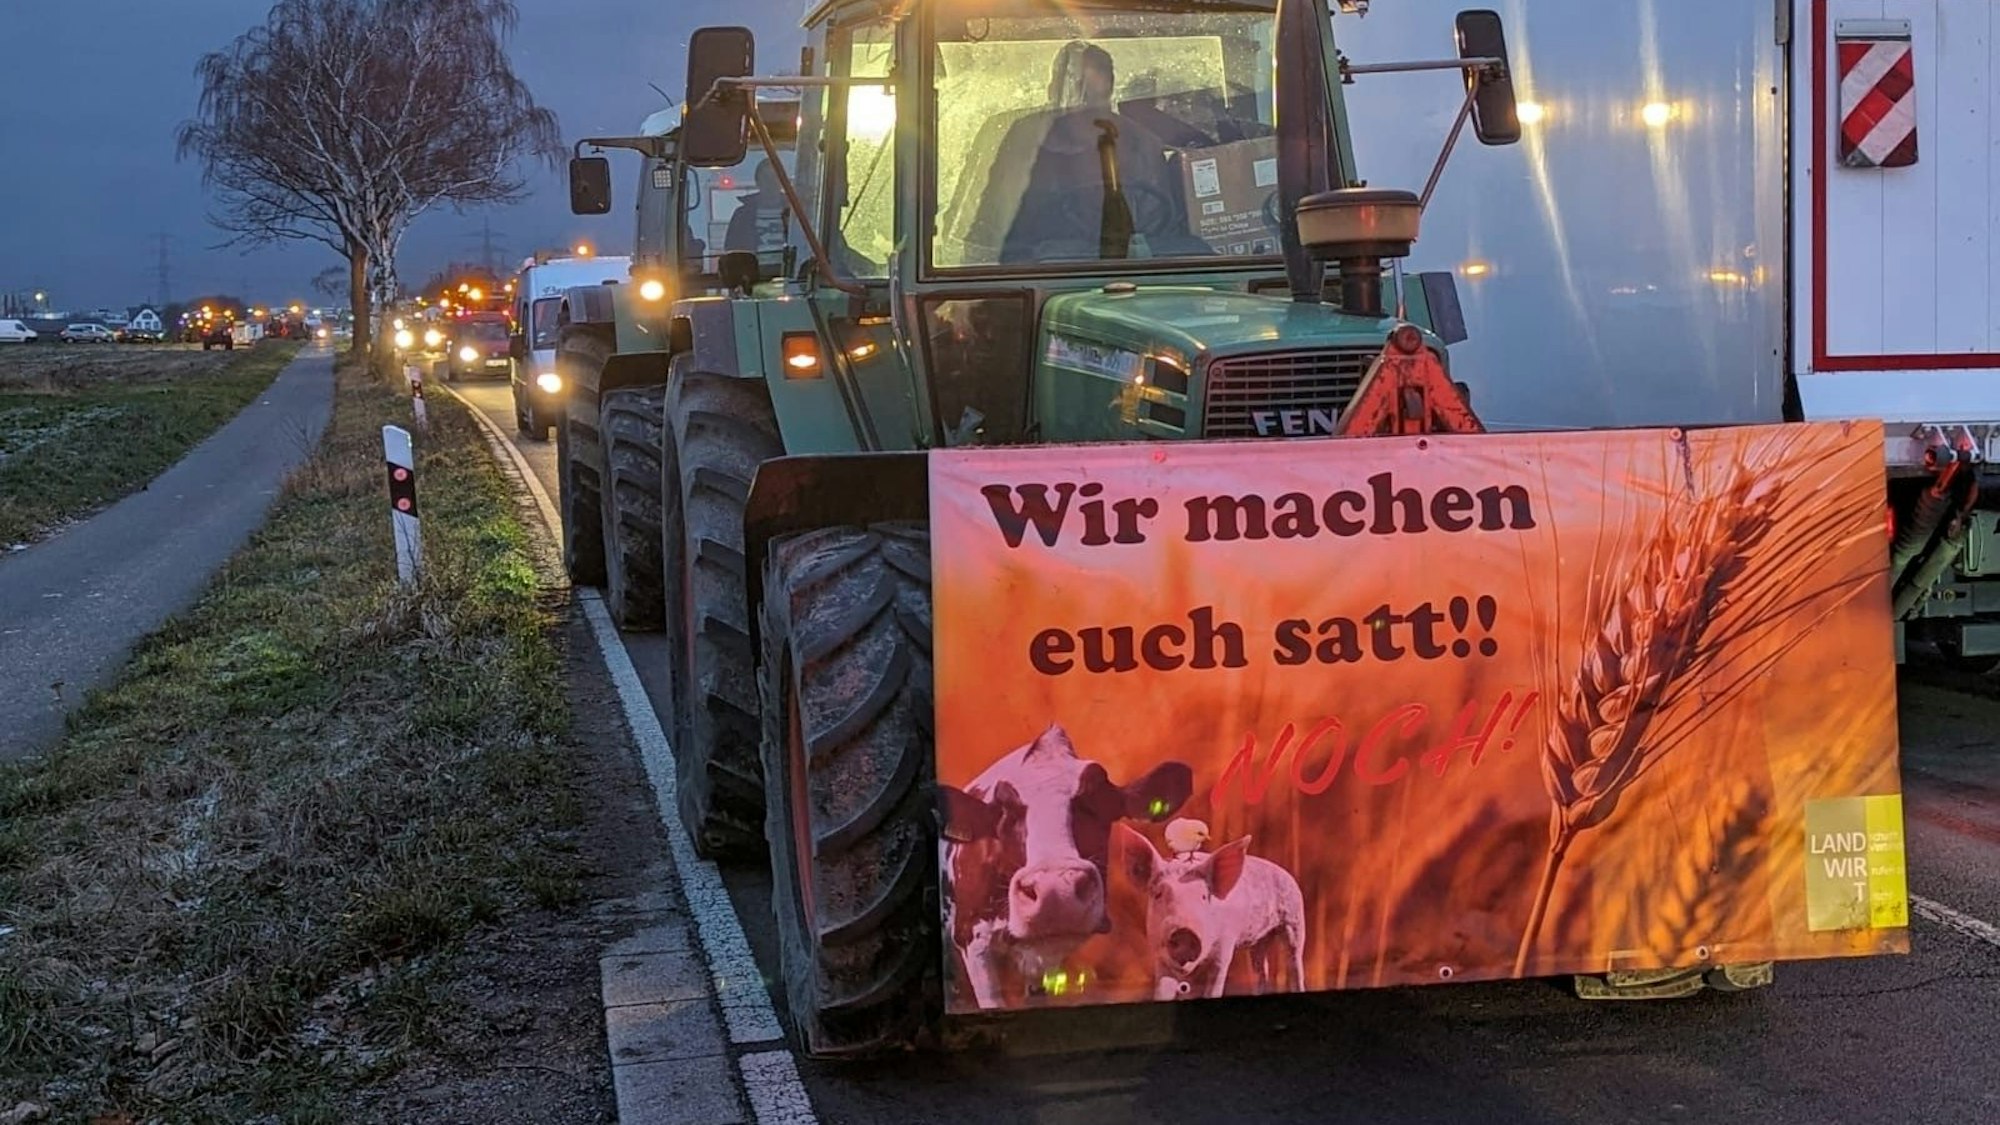 Auf dem Foto ist ein Traktor zu sehen. Auf einem Transparent steht „Wir machen euch satt!!“.